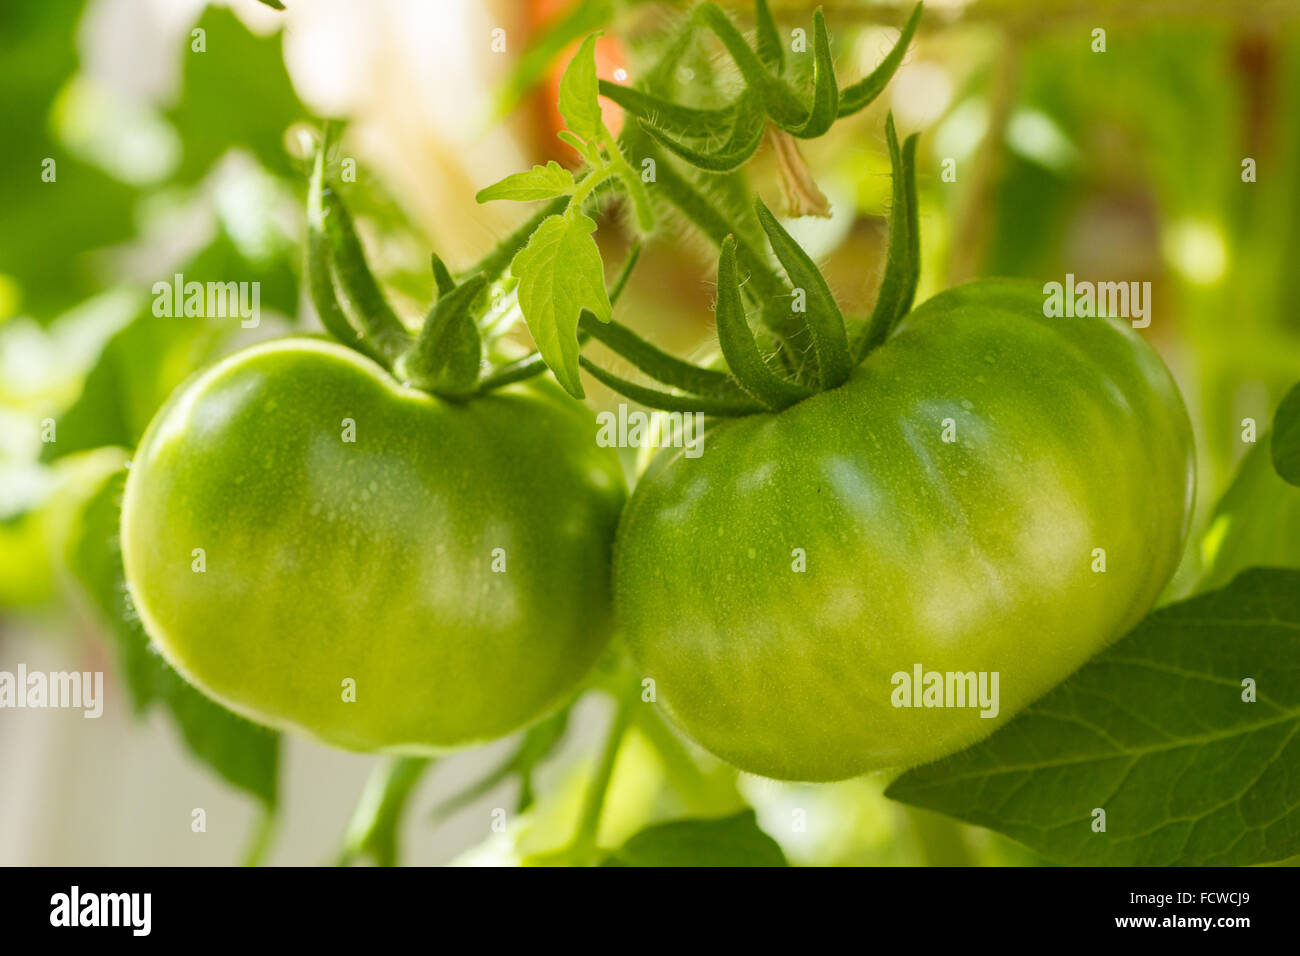 Primo piano di 2 pomodori verdi che crescono su di un ramo Foto Stock